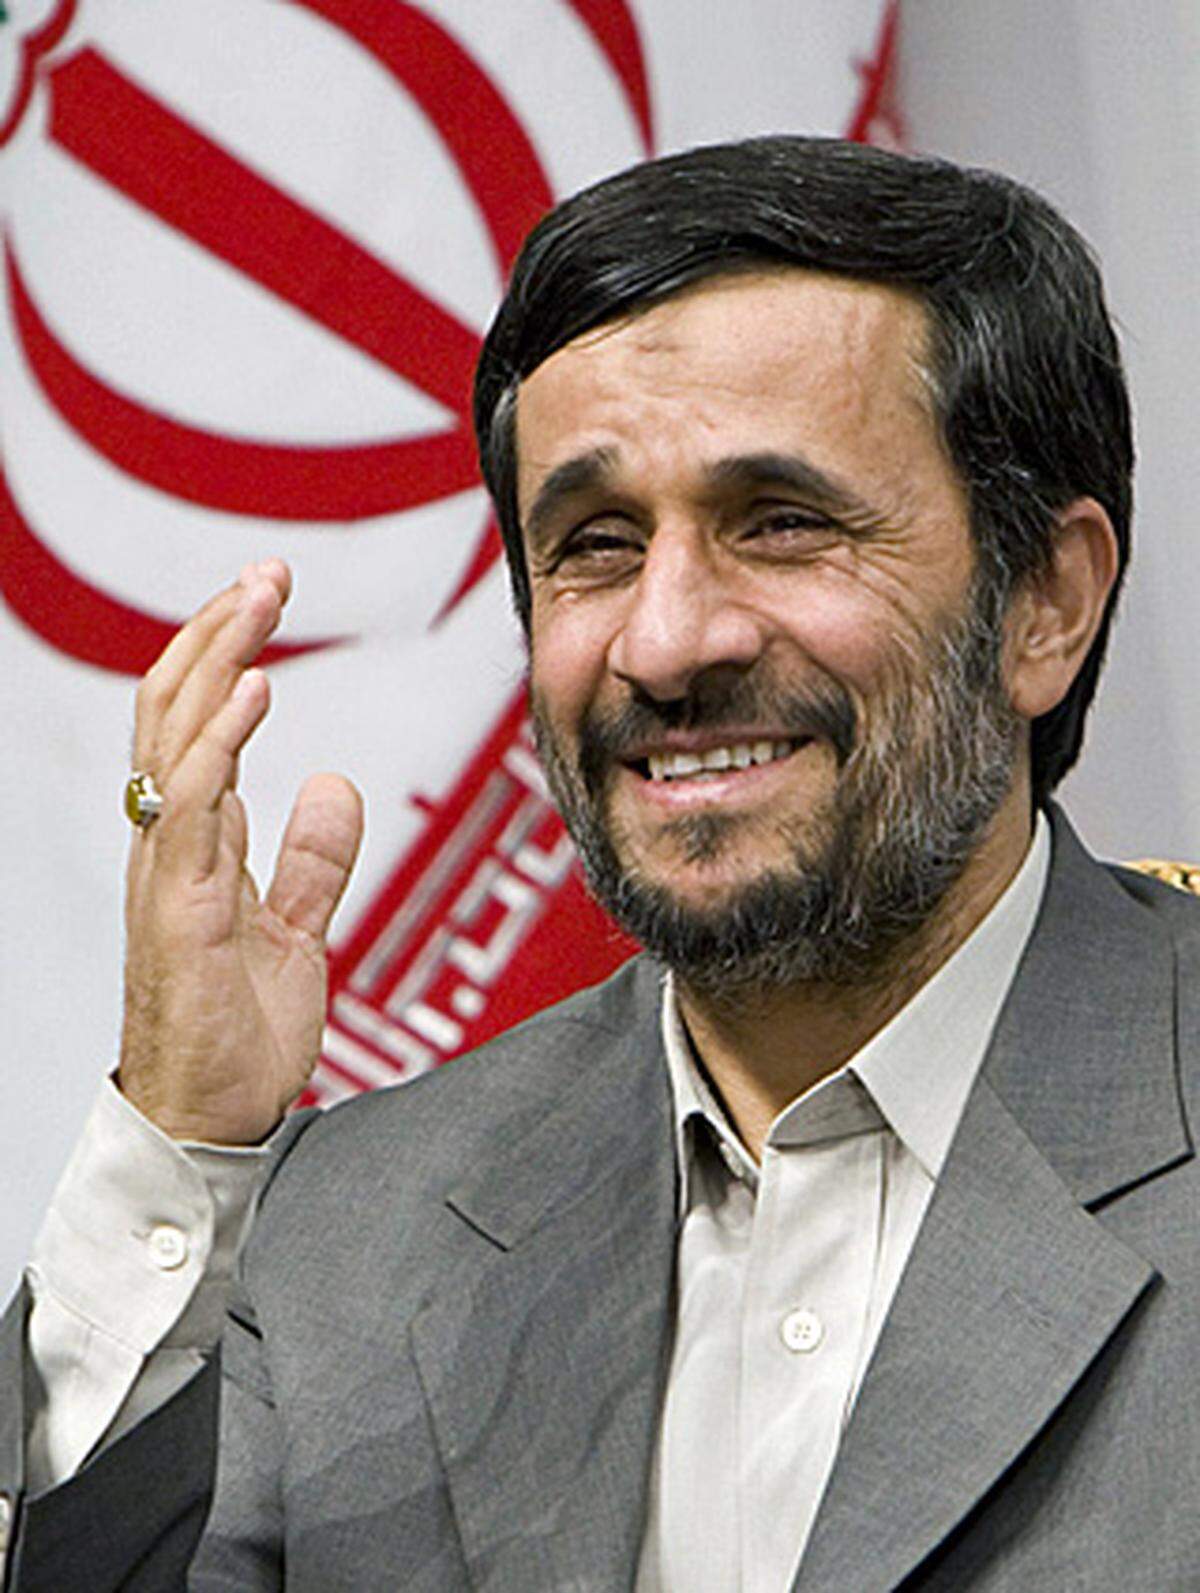 Seit 2005 ist der als ultrakonservativ geltende Mahmoud Ahmadinejad Staatspräsident. Er droht Israel mit Vernichtung und leugnet den Holocaust. Ahmadinejad unterstützt vom Westen als Terroristen eingestufte Gruppen. Hinzu kommt die Sorge um die atomaren Pläne. Für die internationale Atomorganisation (IAEA) ist nicht klar, ob das Atomprogramm militärisch oder zivil ist. Weder die USA noch die EU sehen den Iran derzeit als zuverlässigen Partner.